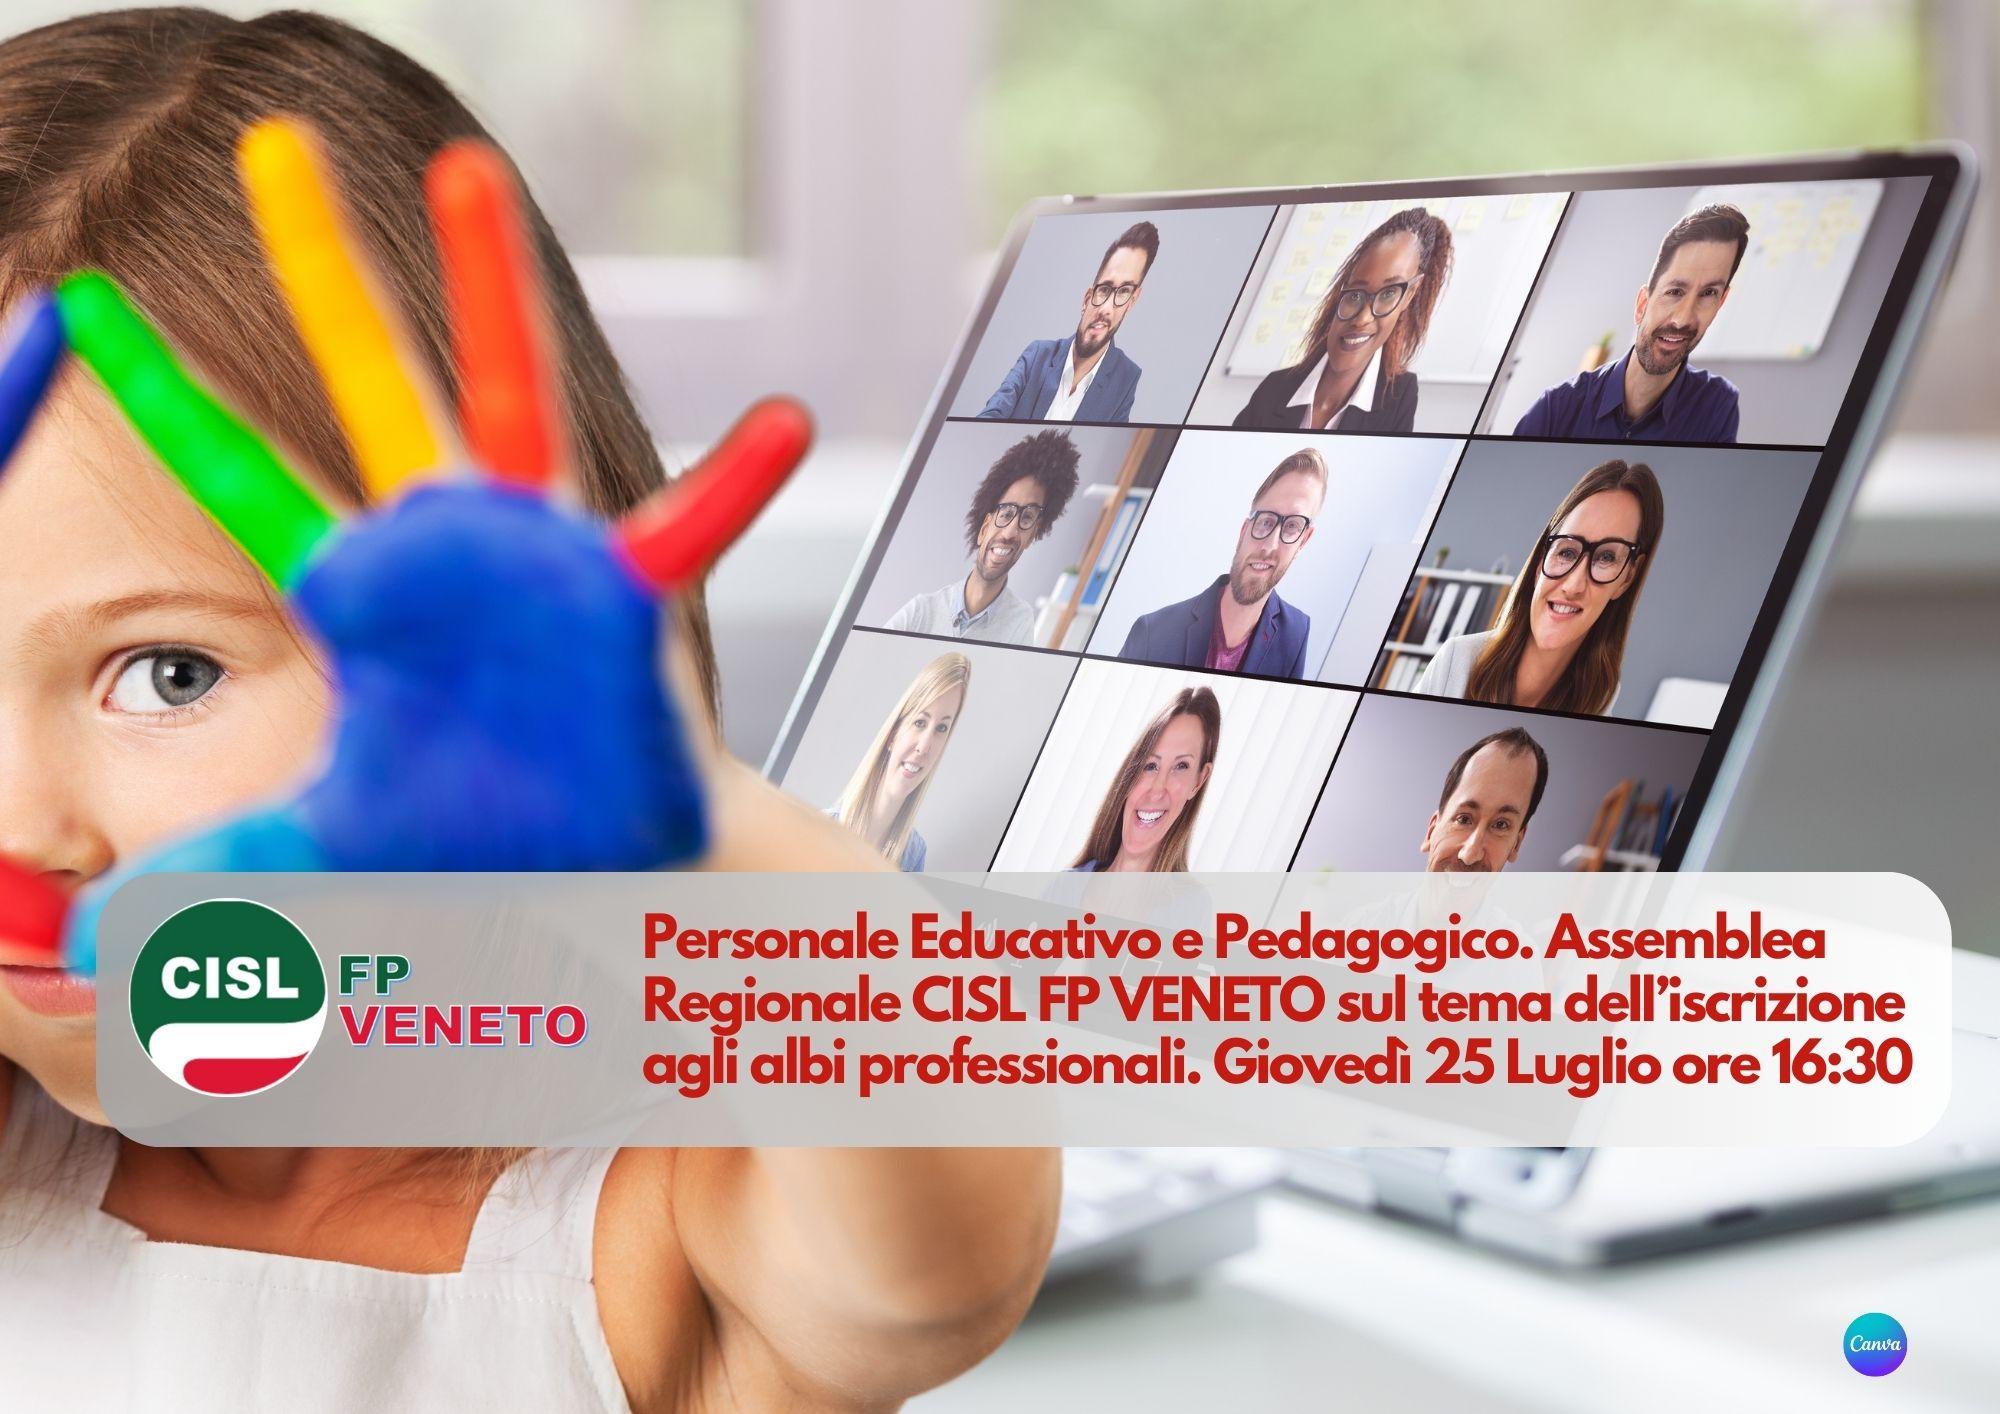 CISL FP Veneto. Personale educativo e pedagogico: 25 luglio ore 16.30 assemblea regionale sul tema dell'ordinamento